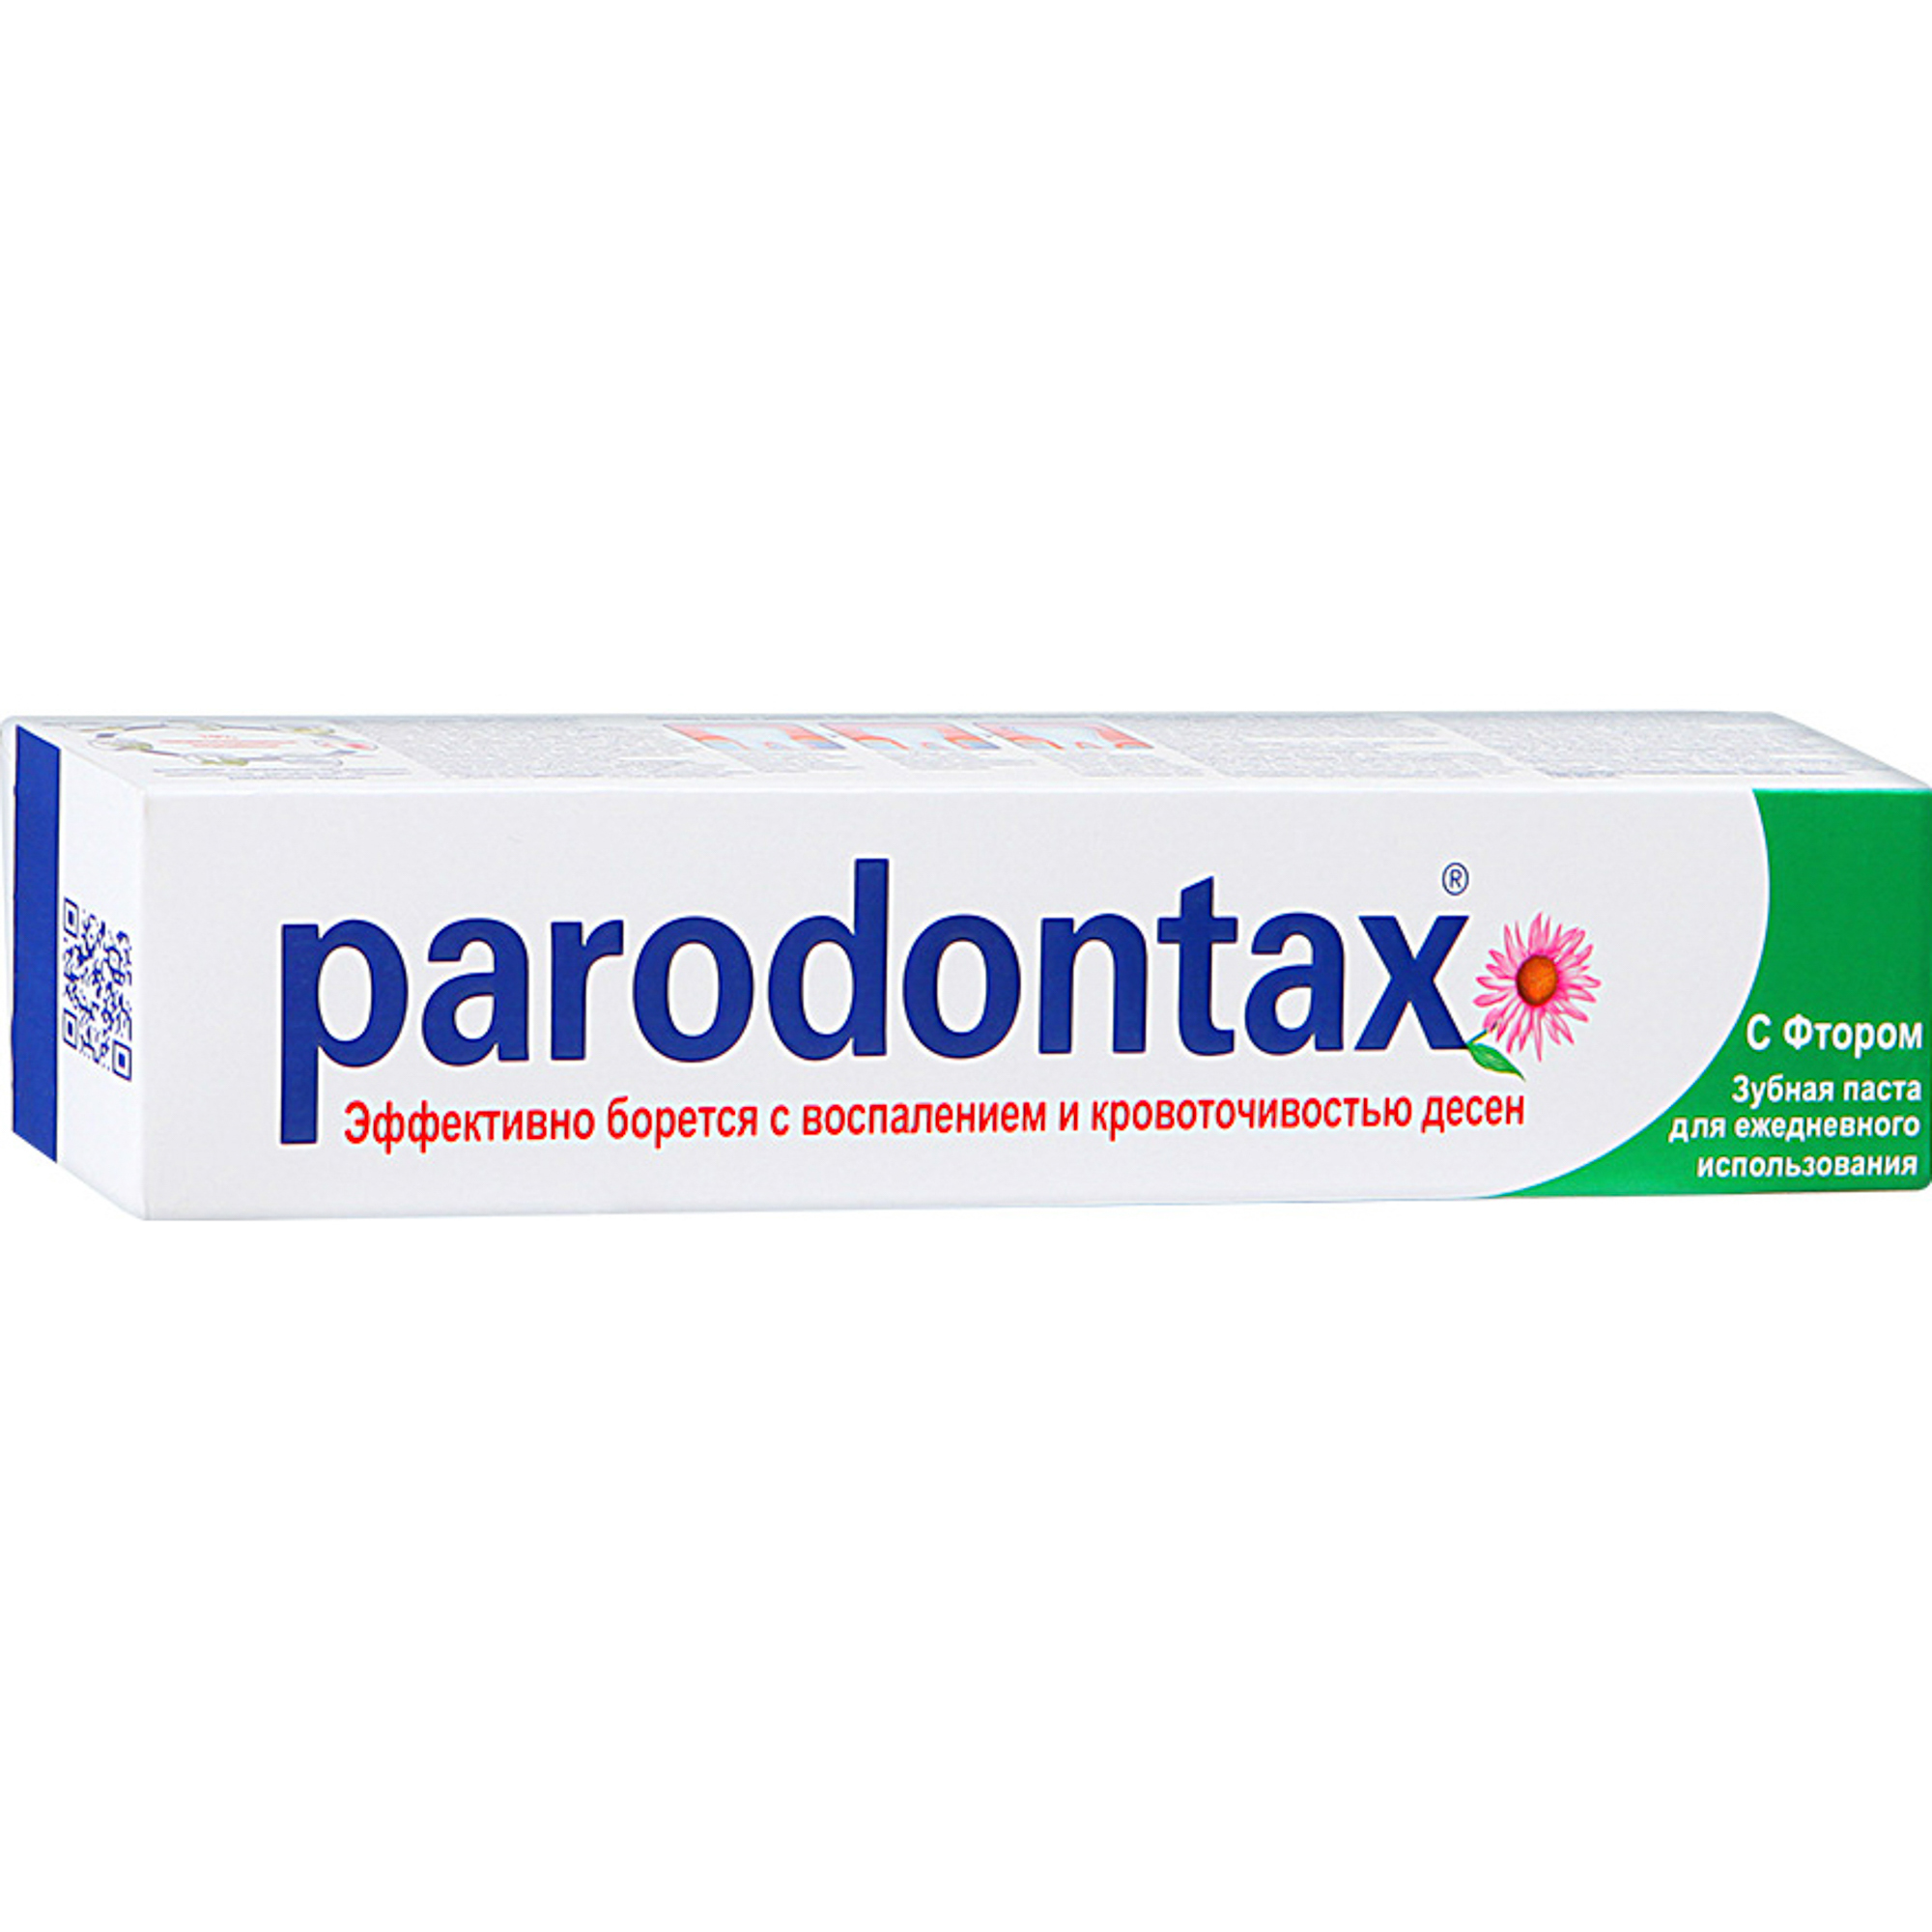 Зубная паста Parodontax С фтором 50 мл зубная паста parodontax ультра очищение 75 мл